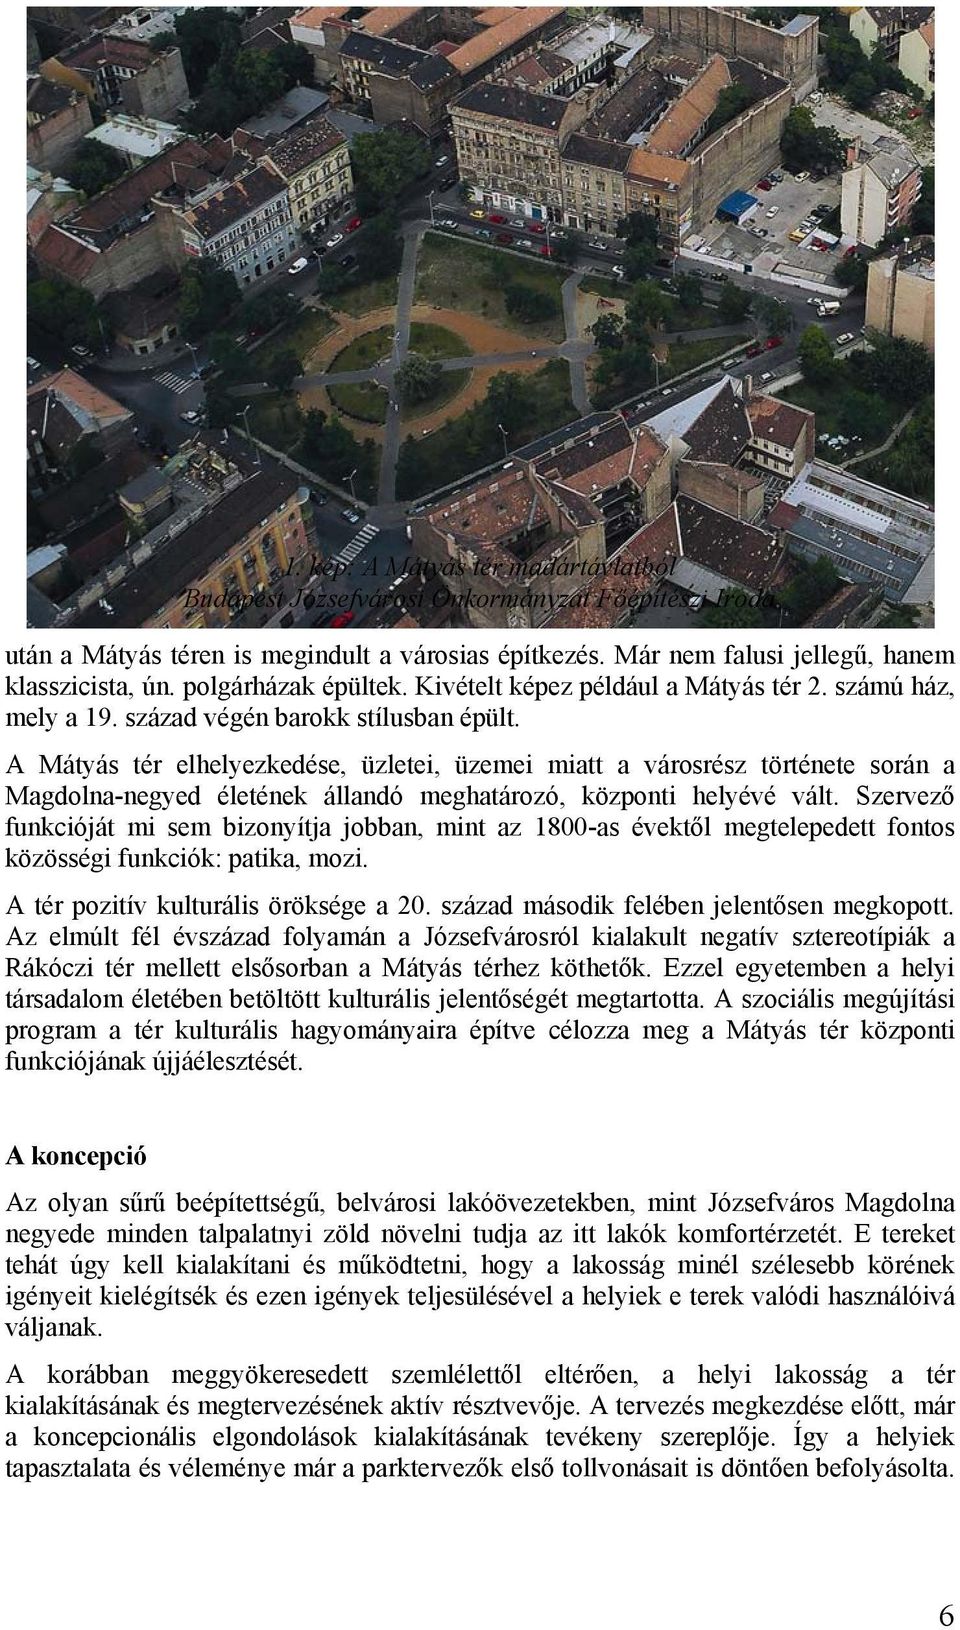 A Mátyás tér elhelyezkedése, üzletei, üzemei miatt a városrész története során a Magdolna-negyed életének állandó meghatározó, központi helyévé vált.